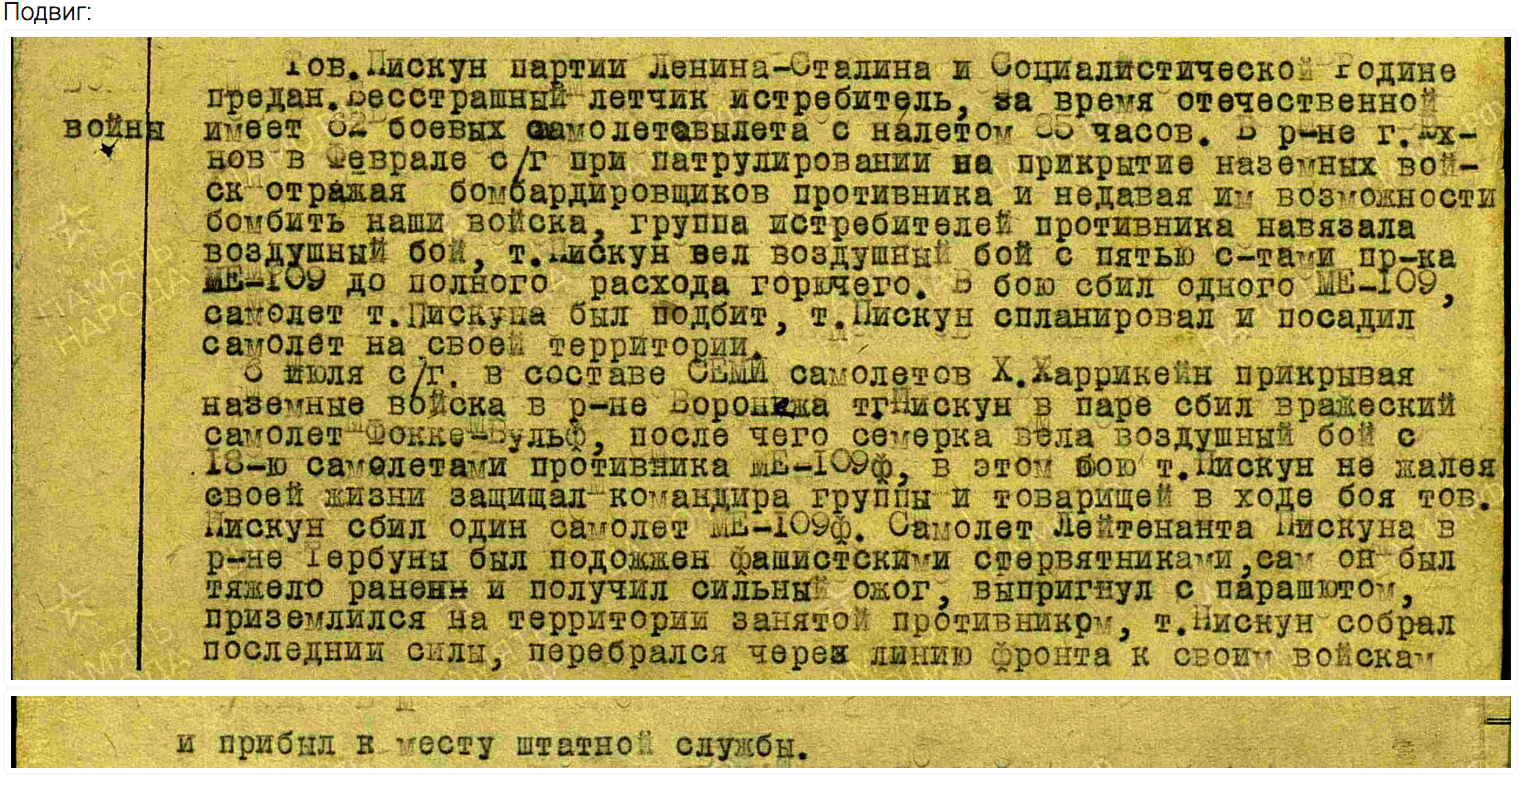 Боевые записи о действиях Пискуна Г.Д. 1942 год